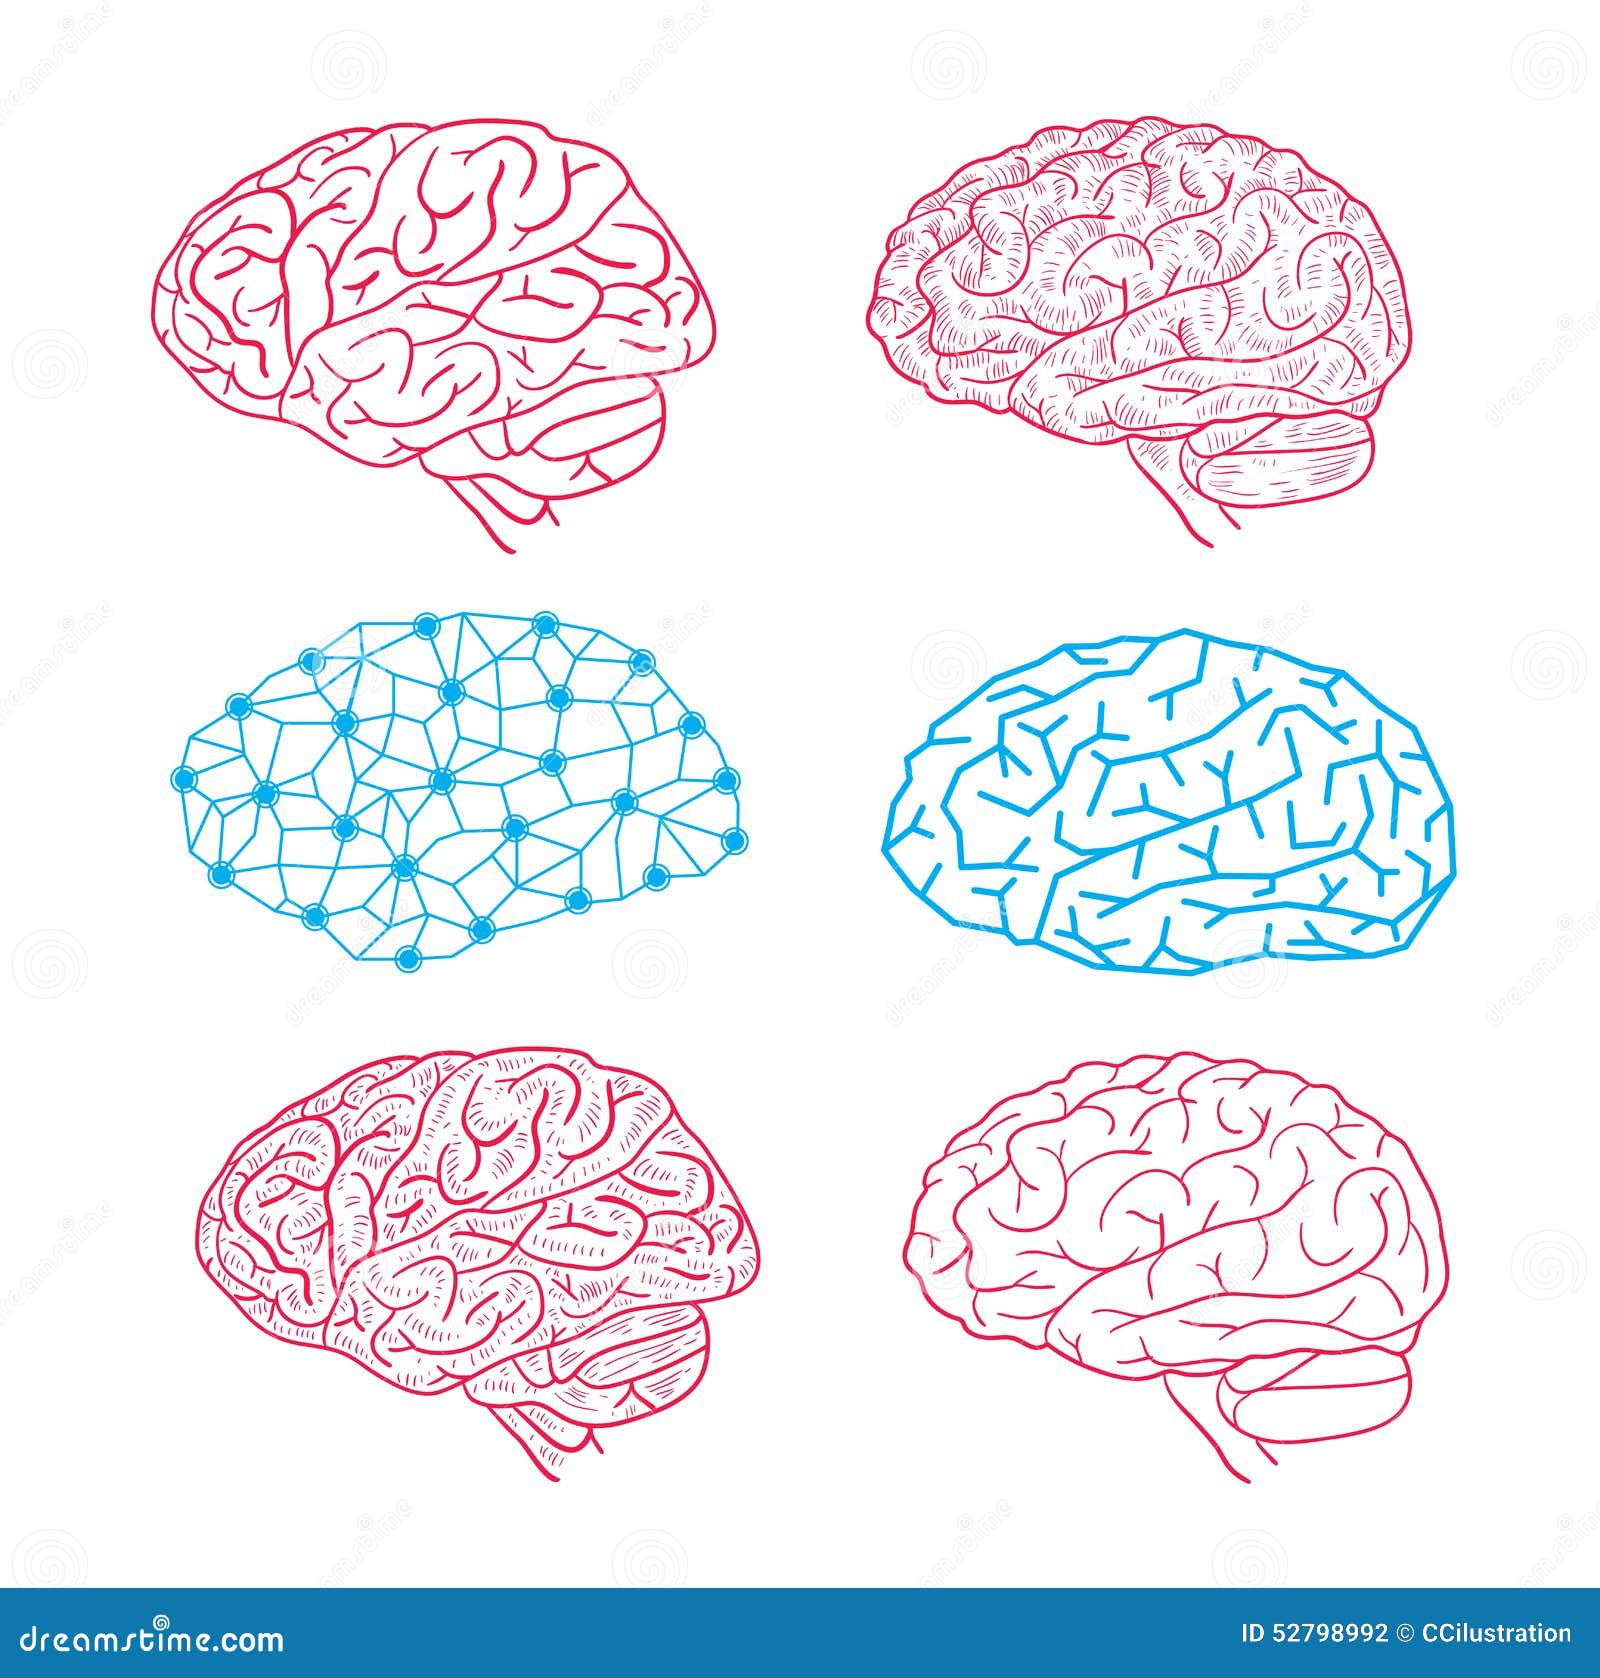 Человеческий мозг изометрия